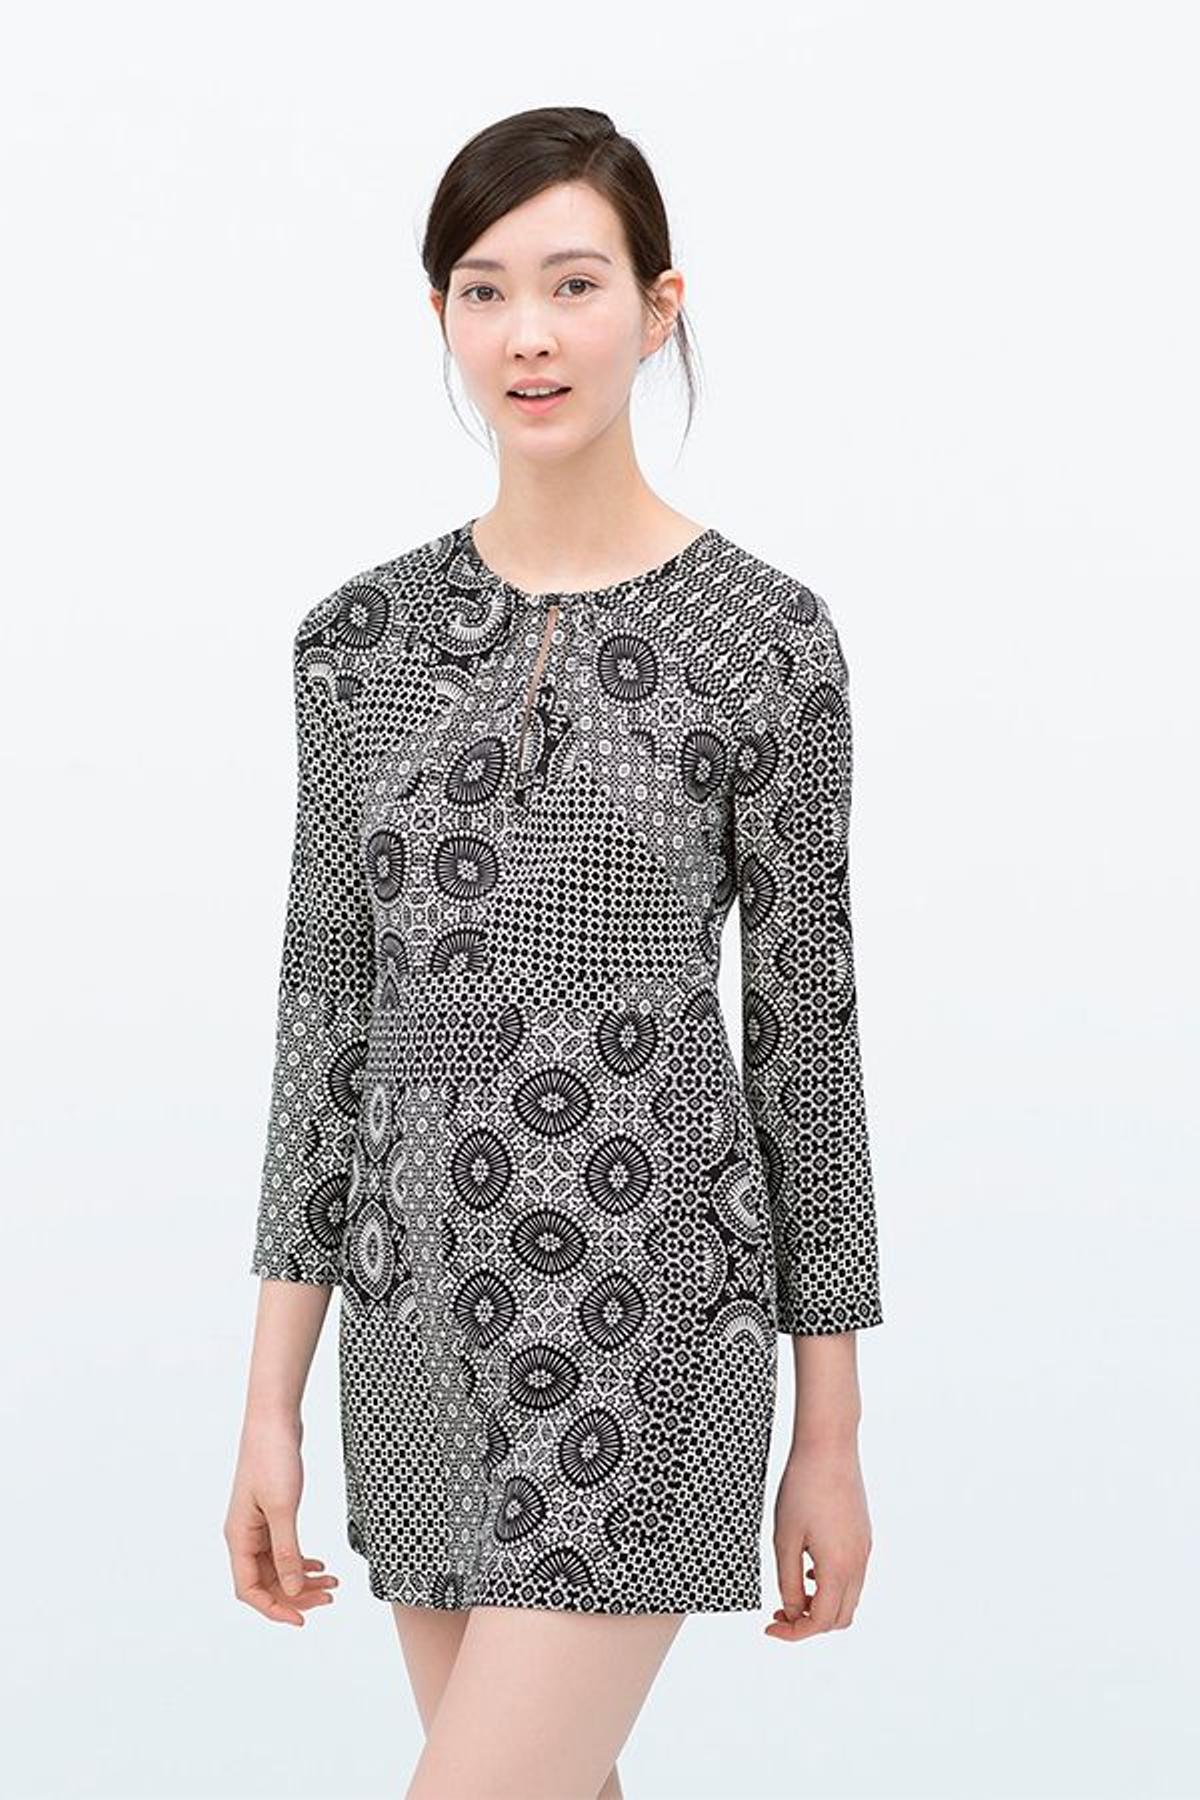 Vestido estampado patchwork de ZARA (19,95€)